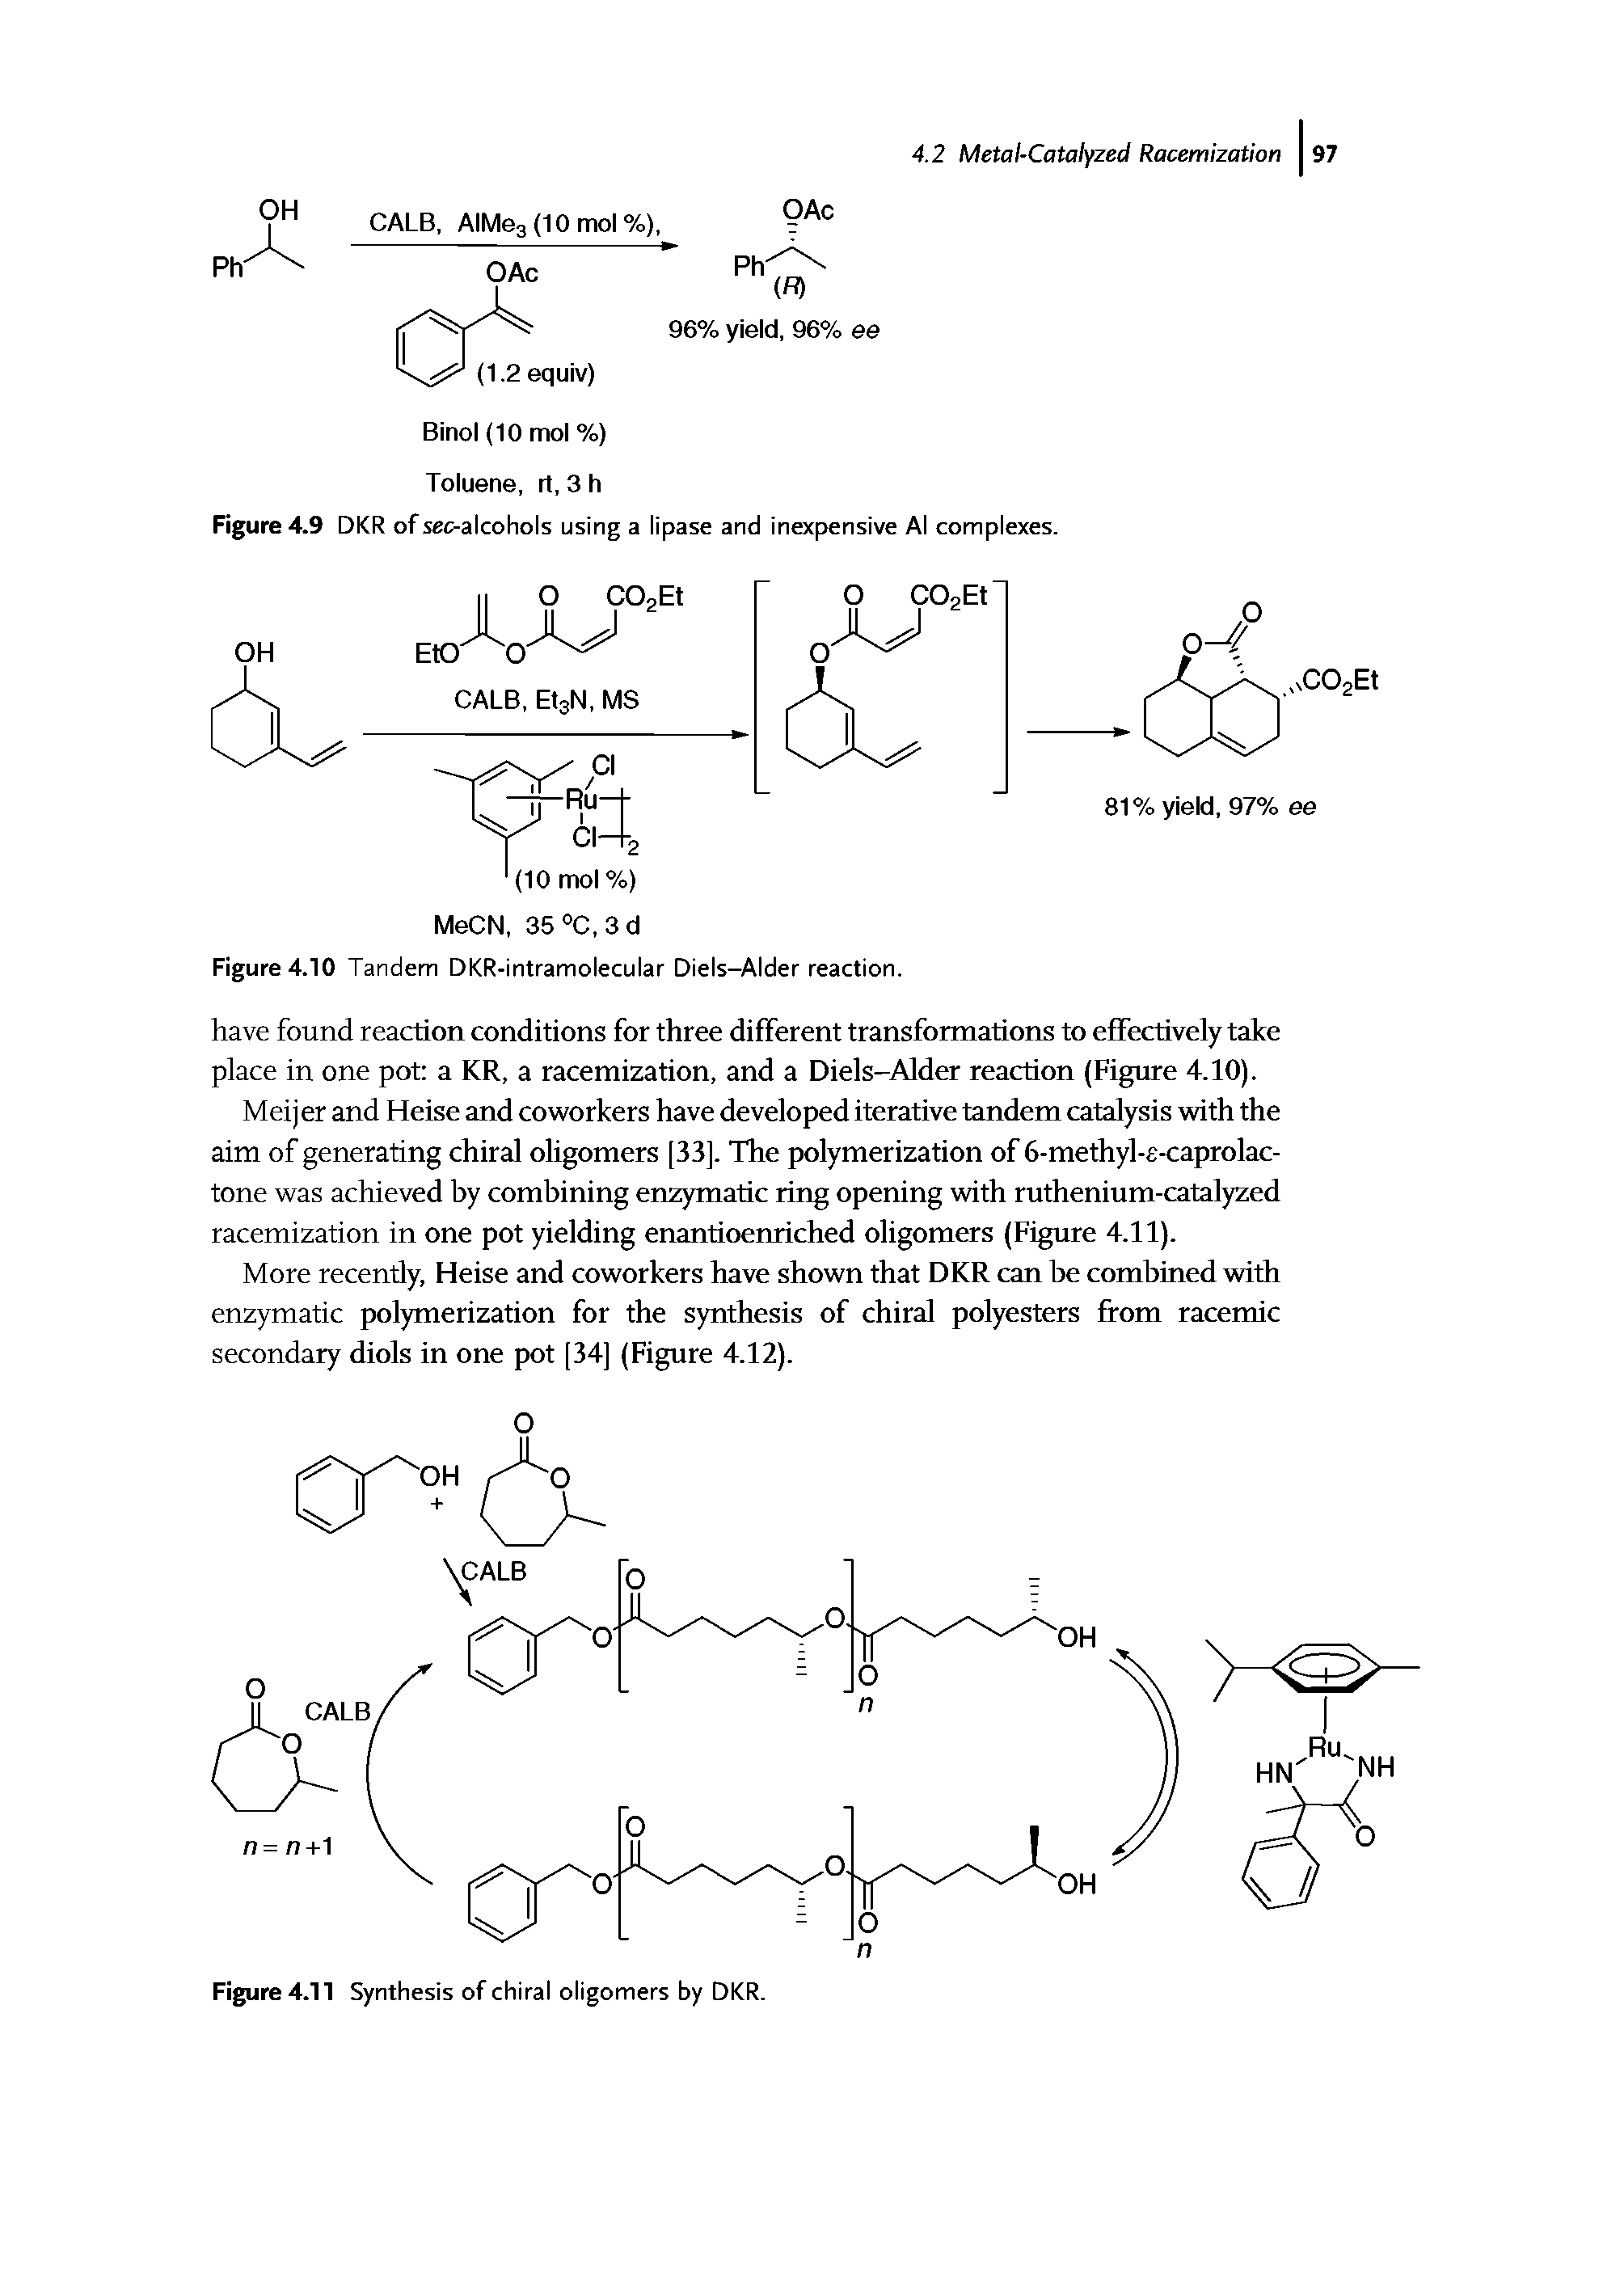 Figure 4.10 Tandem DKR-intramolecular Diels-Alder reaction.